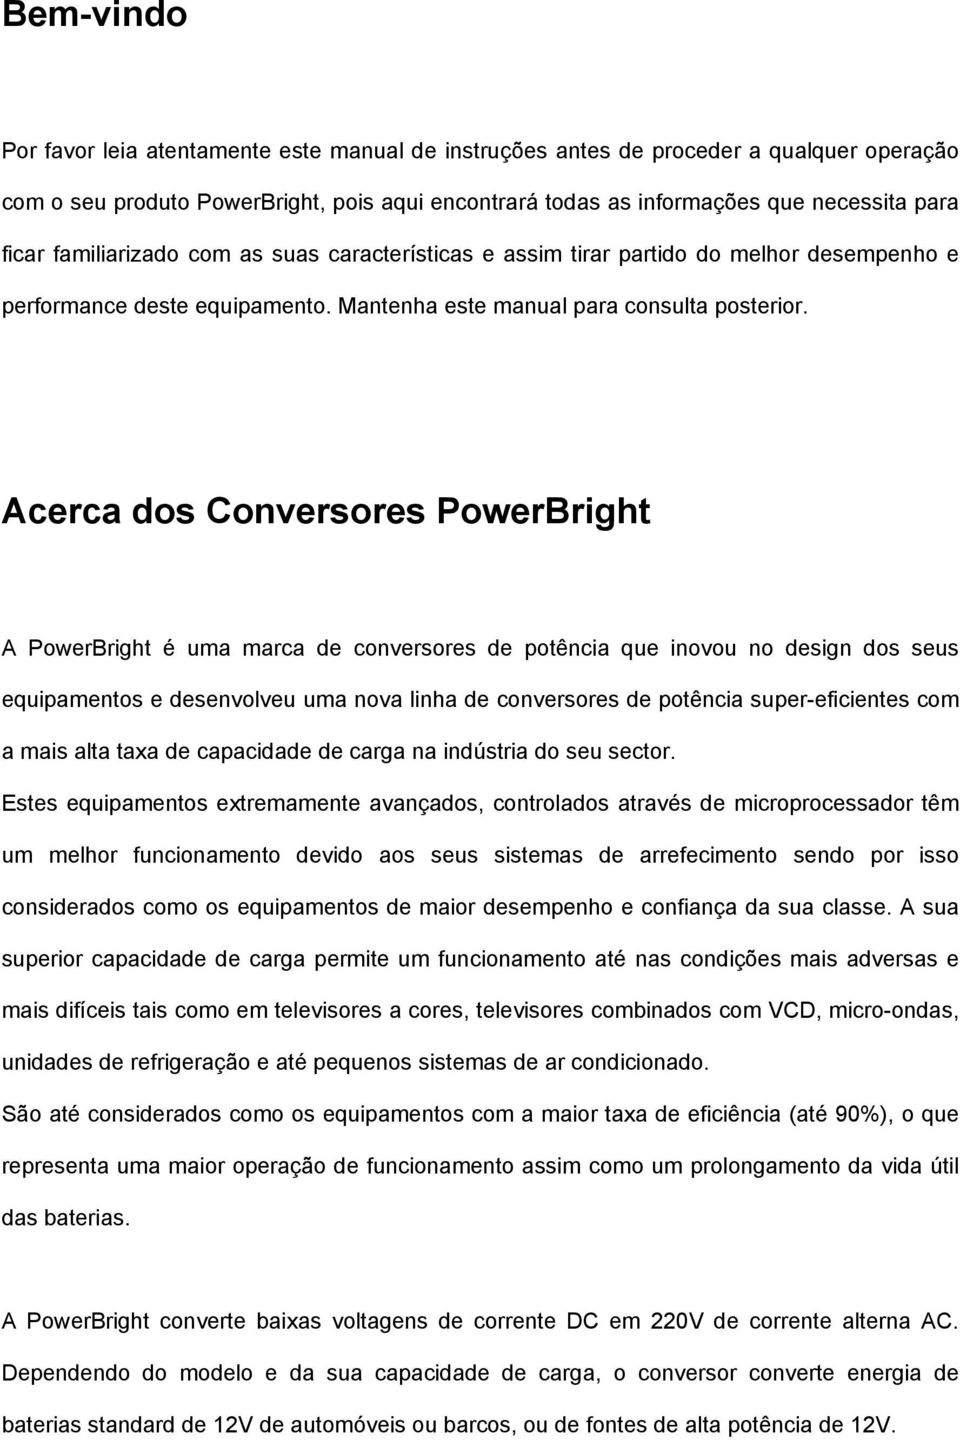 Acerca dos Conversores PowerBright A PowerBright é uma marca de conversores de potência que inovou no design dos seus equipamentos e desenvolveu uma nova linha de conversores de potência